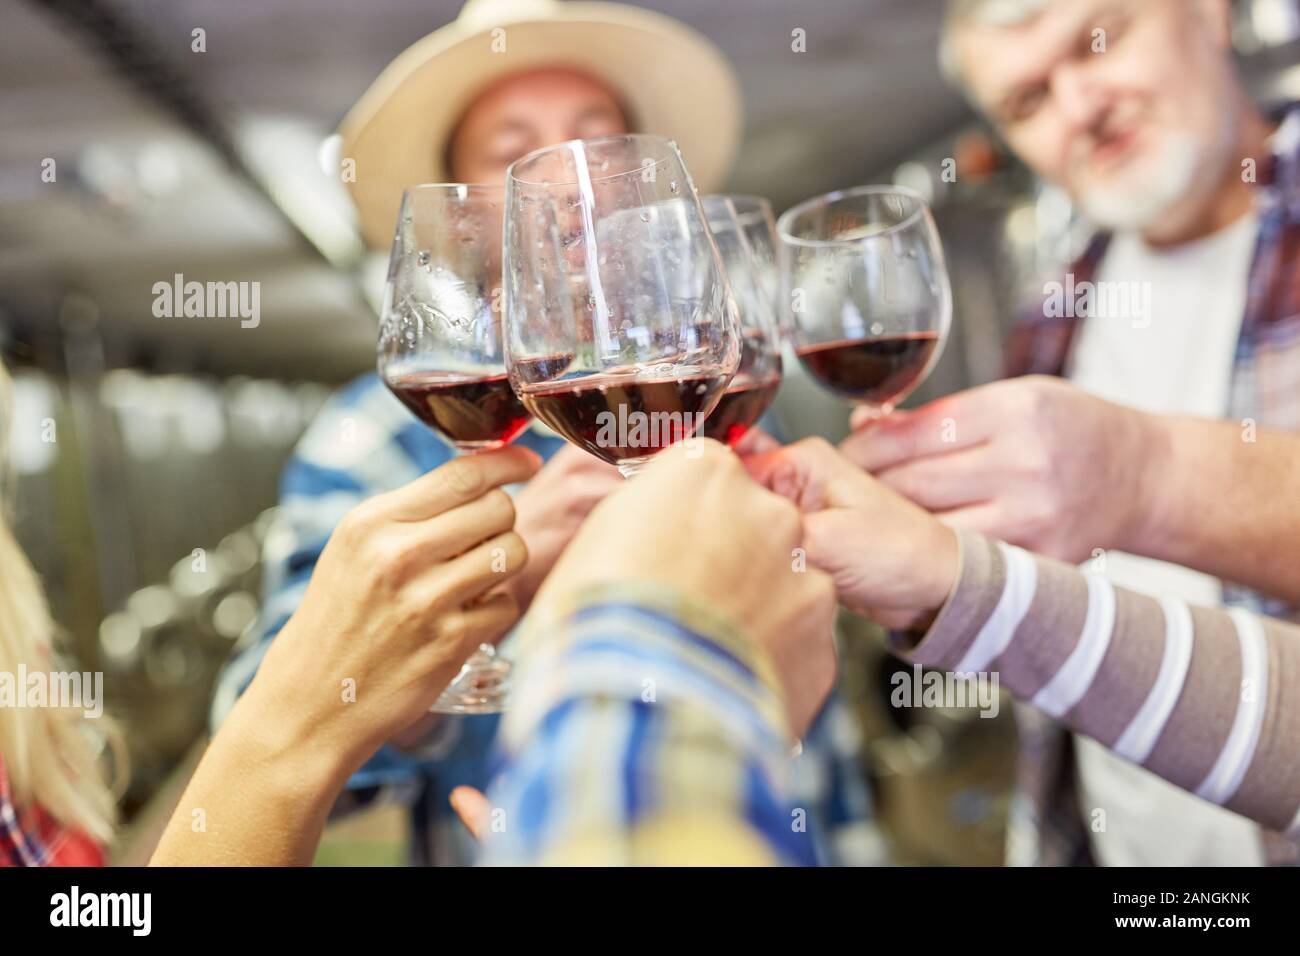 L'équipe de vignerons souligne ou fait une dégustation de vin tout en grillage avec du vin rouge Banque D'Images